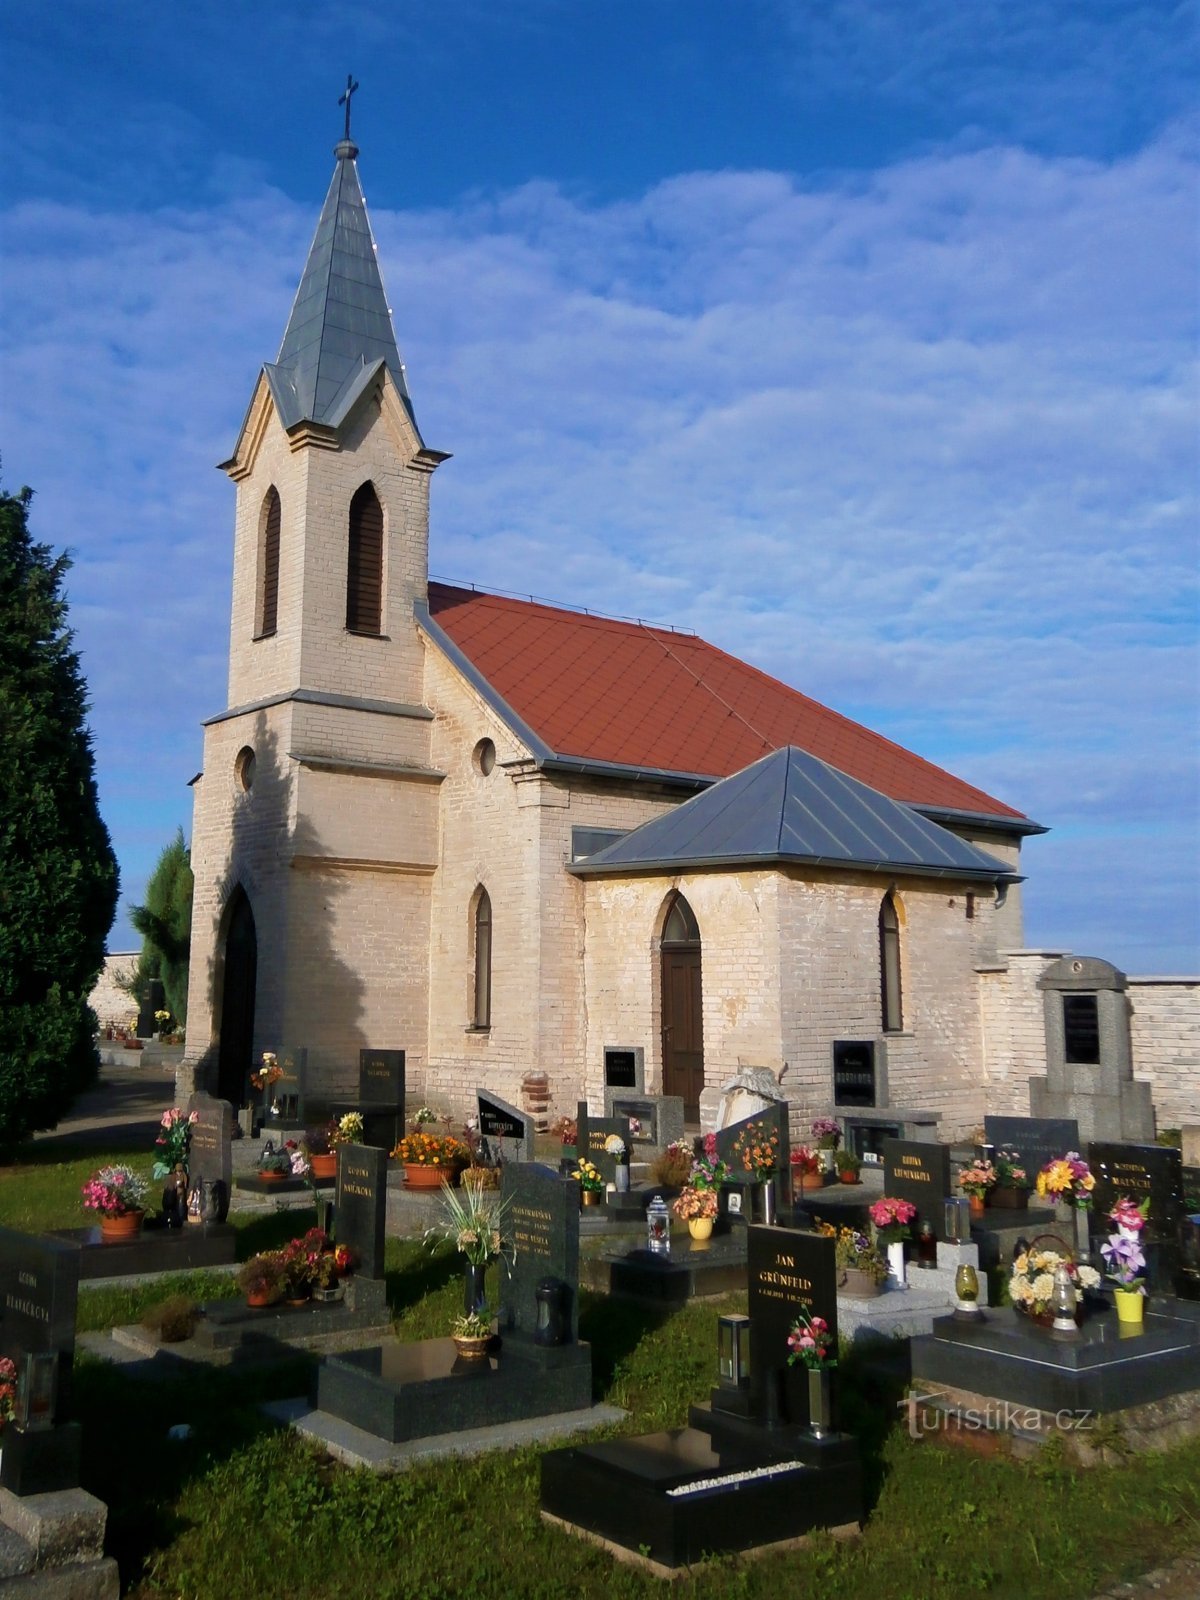 Kaplica Cmentarna Zmartwychwstania Pańskiego (Sedlice)